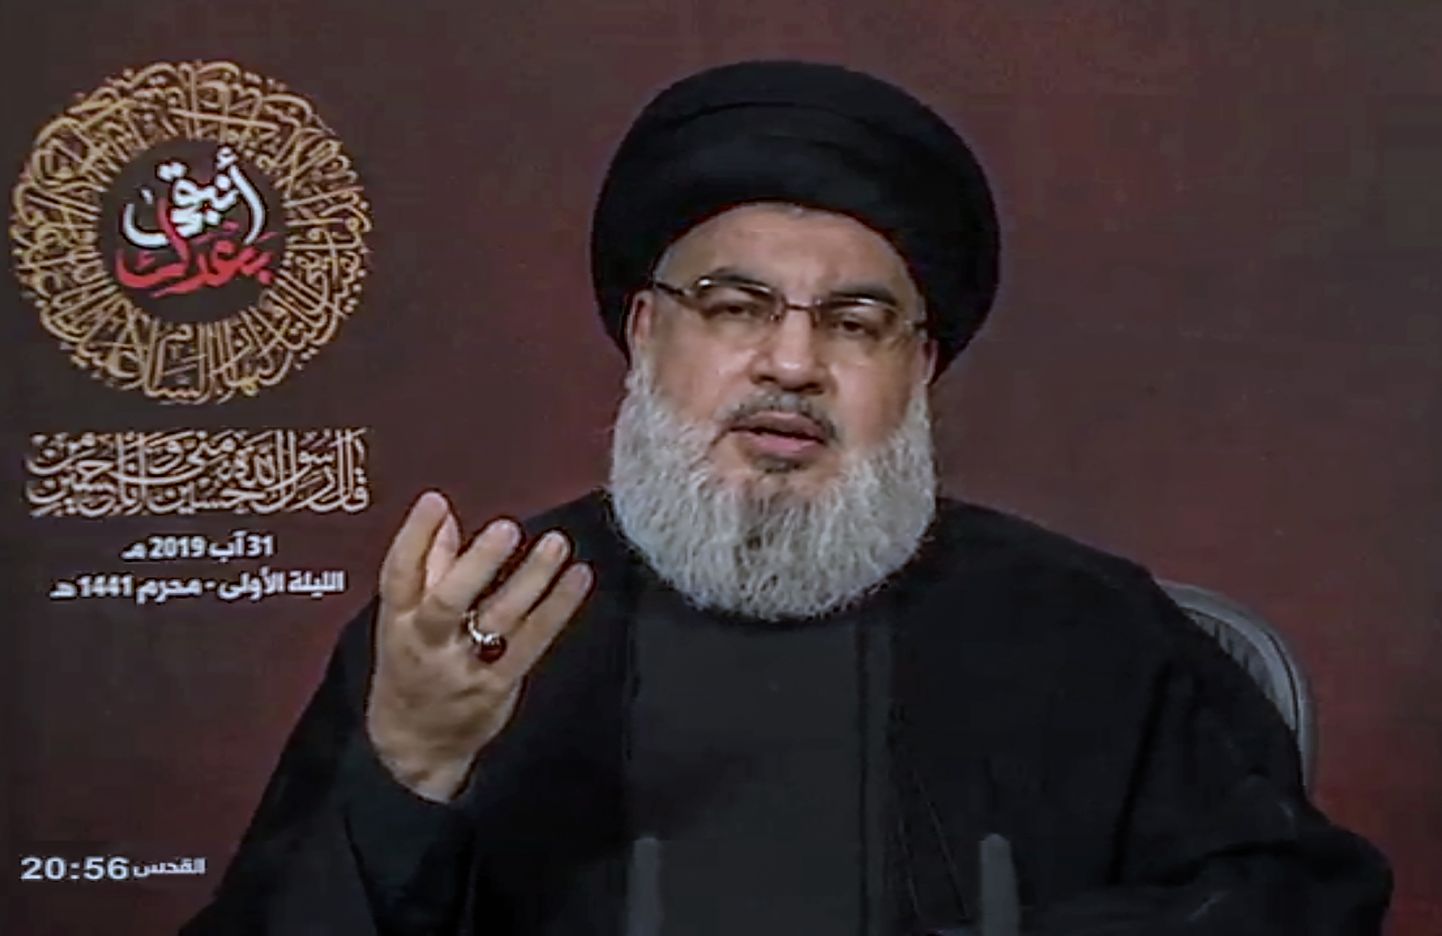 Liibanoni šiialiikumise Hizbollah juht Hassan Nasrallah.